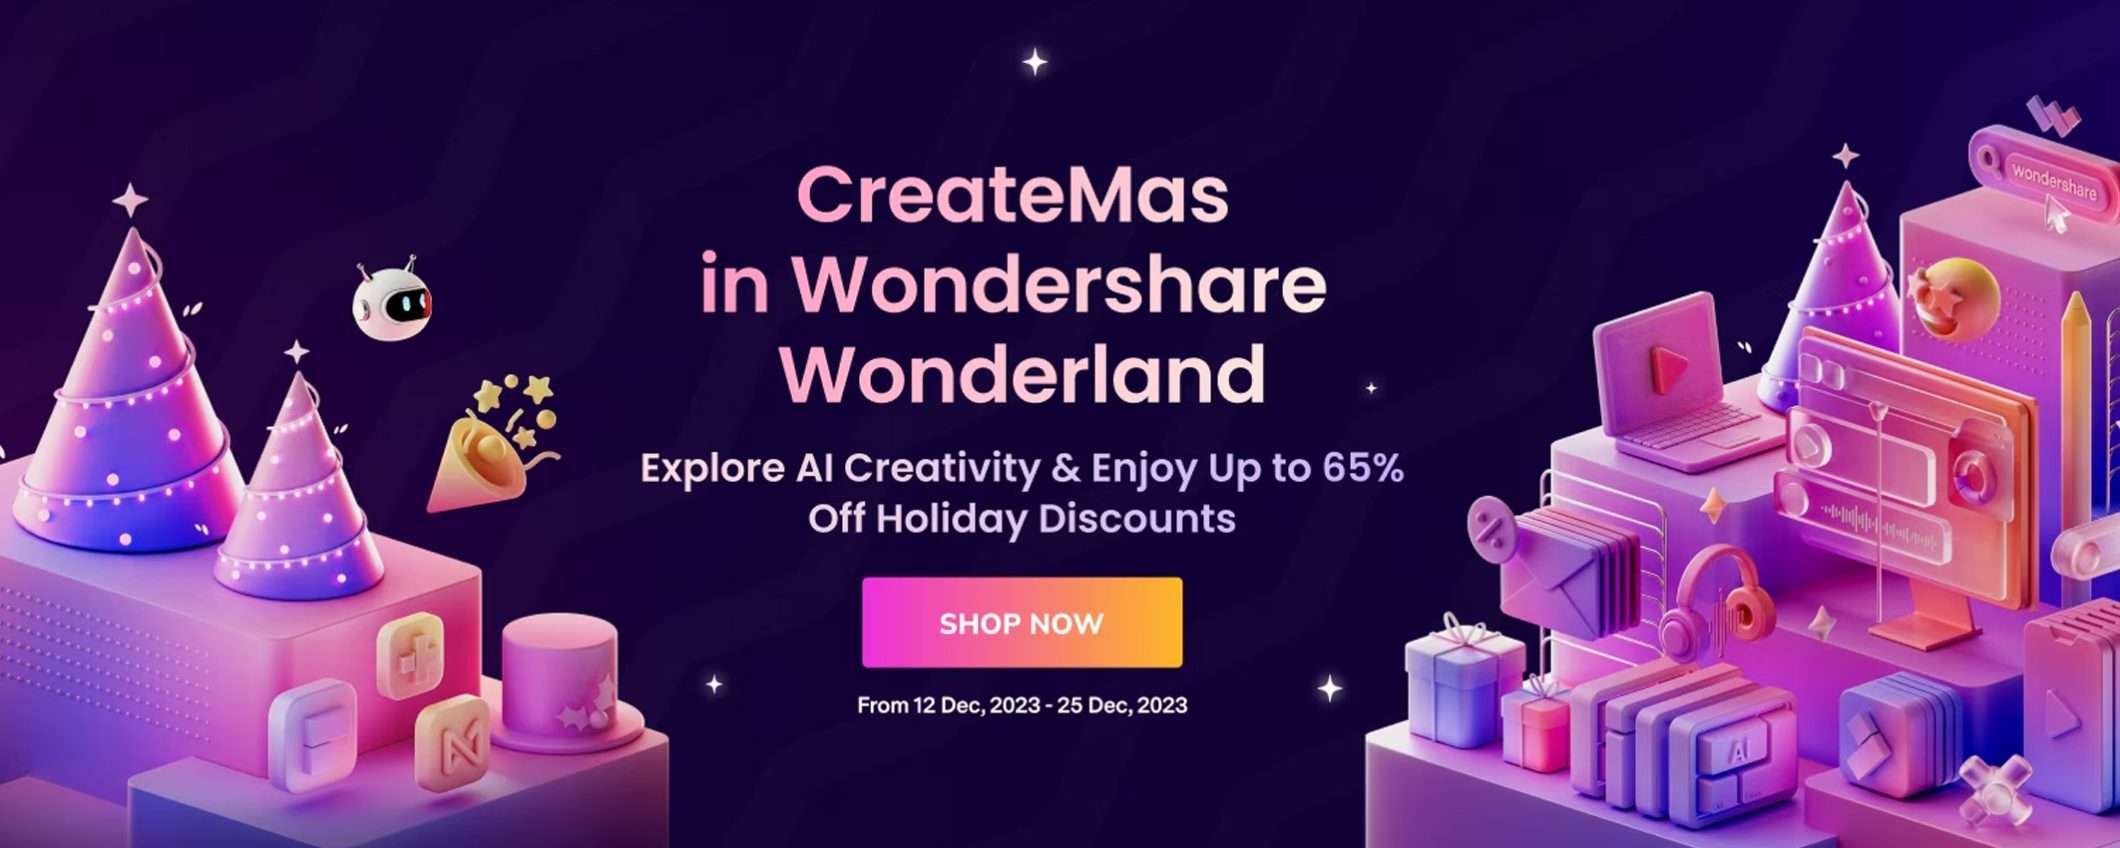 Wondershare: sconti fino al 65% per le festività